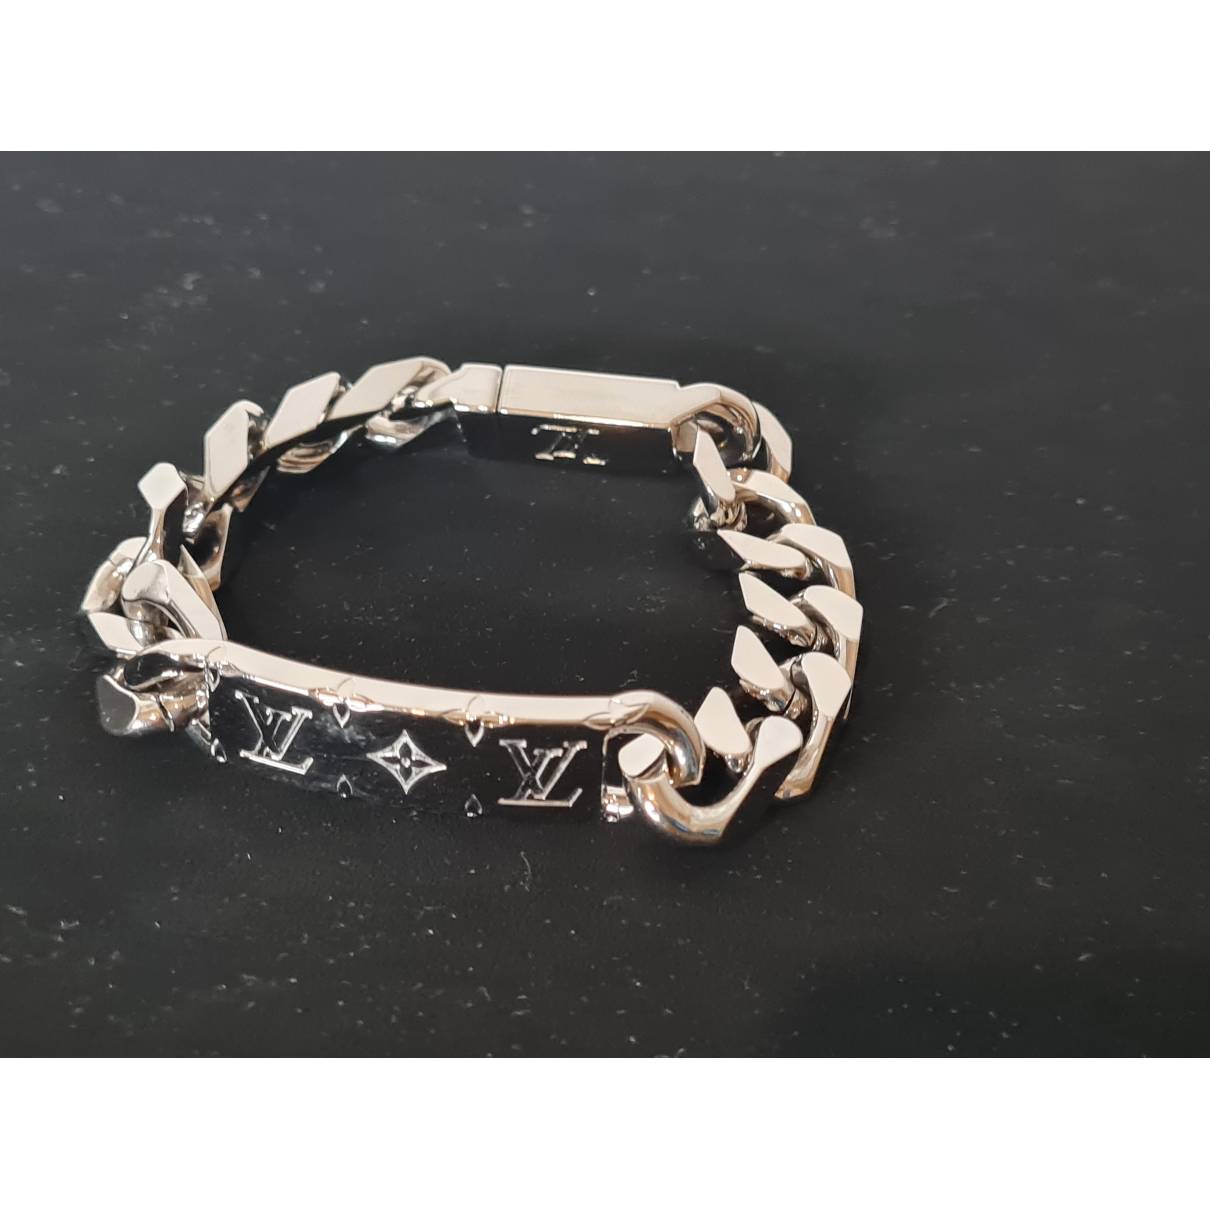 Bracelet Louis Vuitton Silver in Metal - 32386788